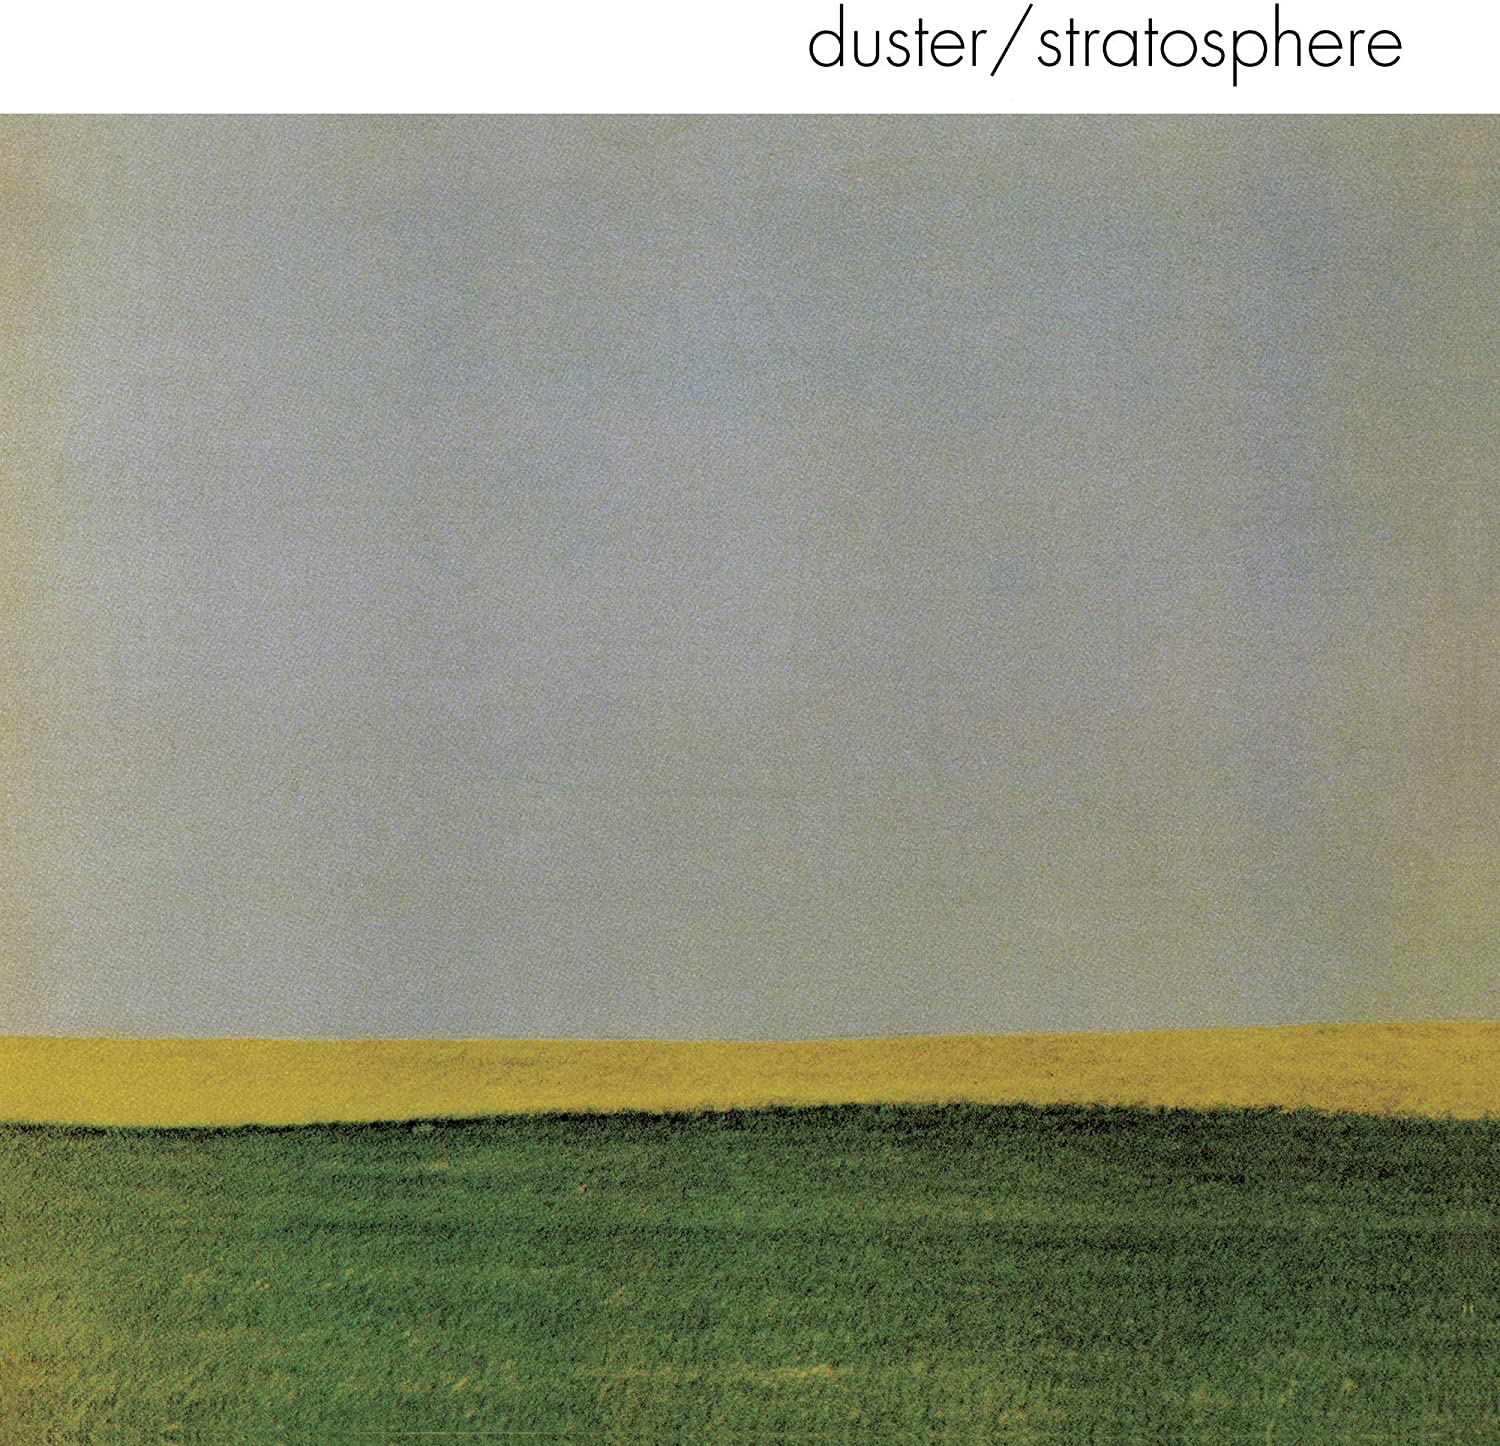 Duster - Stratosphere 25th Ann. (Splatter Vinyl LP)